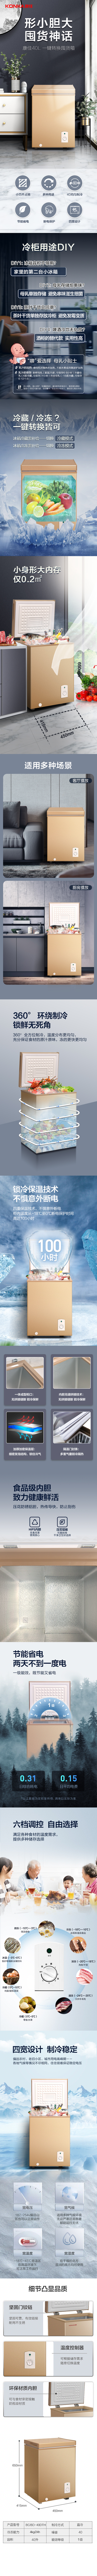 淘宝美工y29812康佳冰箱-小型洗衣机-冰柜设计作品